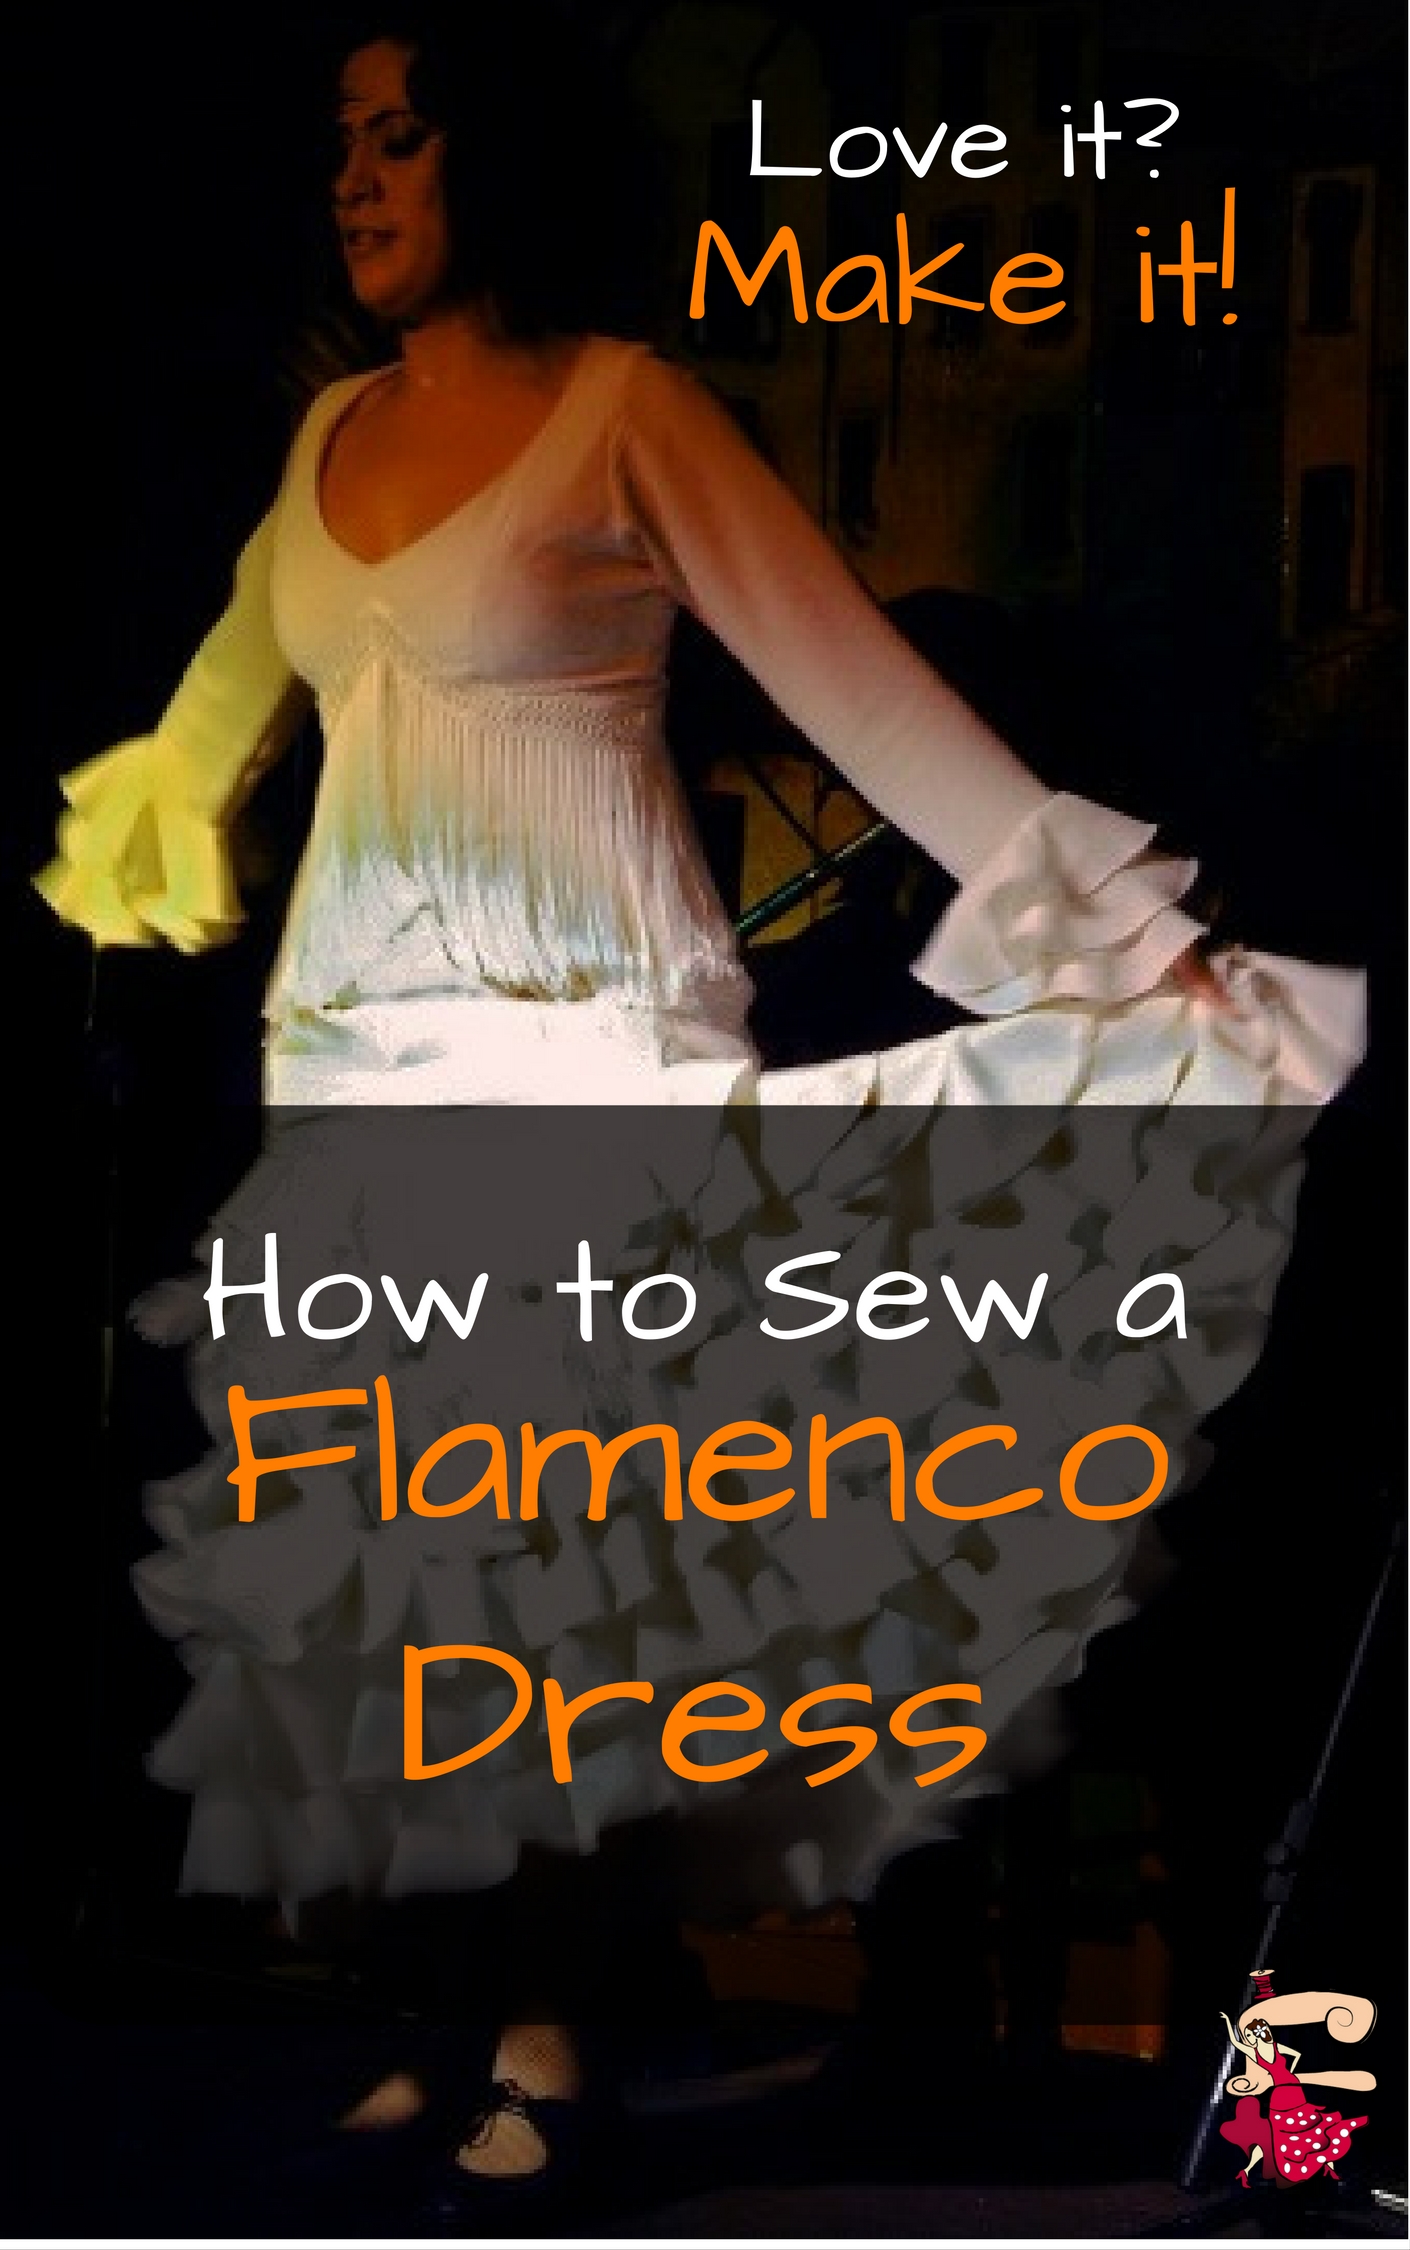 How To Sew a Flamenco Dress